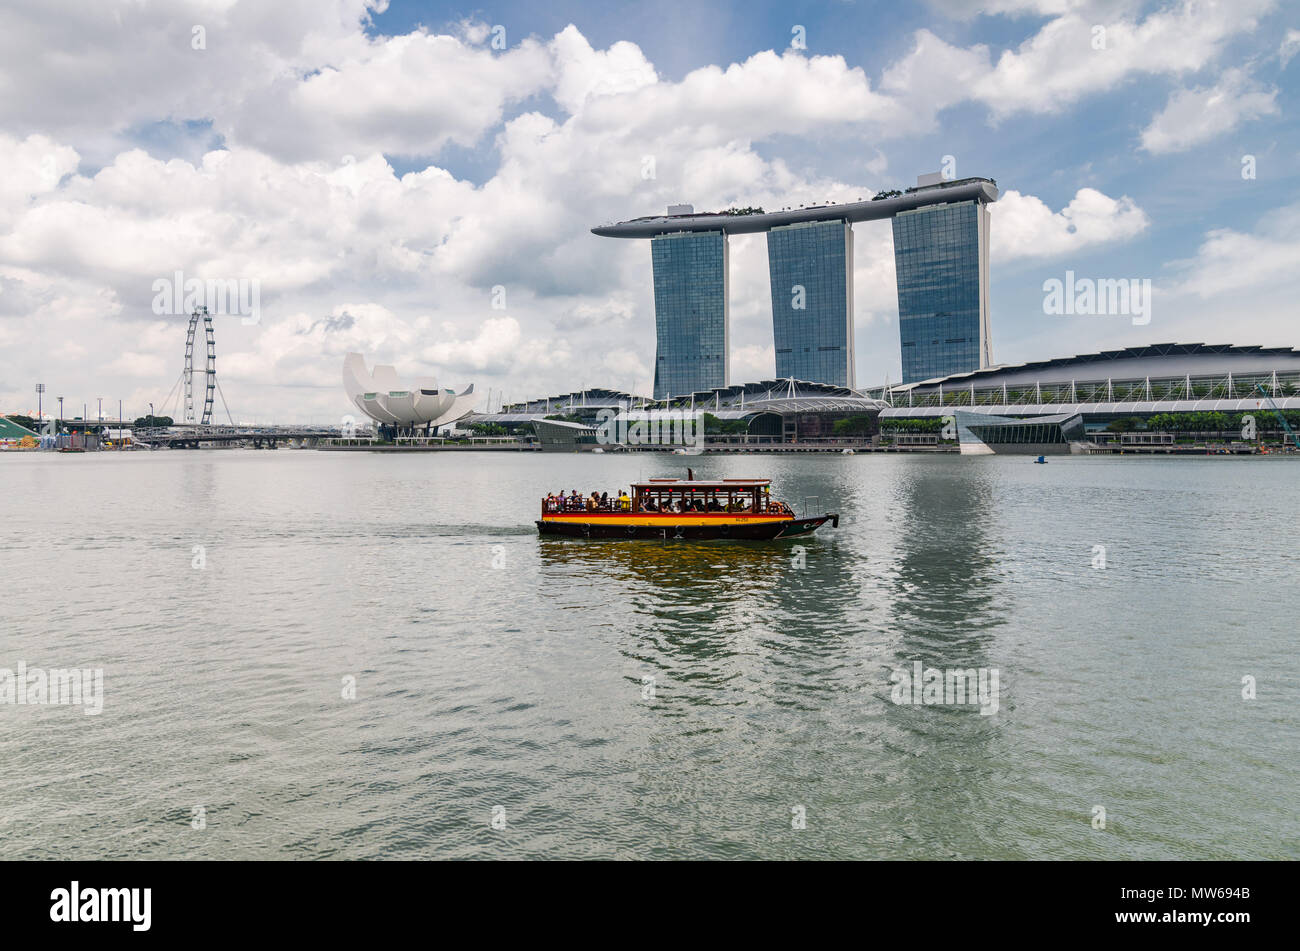 Ein Kreuzfahrtschiff, bekannt als twakows fahren die berühmte Marina Bay Sands Hotel. Das Schiff war für den Transport entlang des Singapore River verwendet. Stockfoto